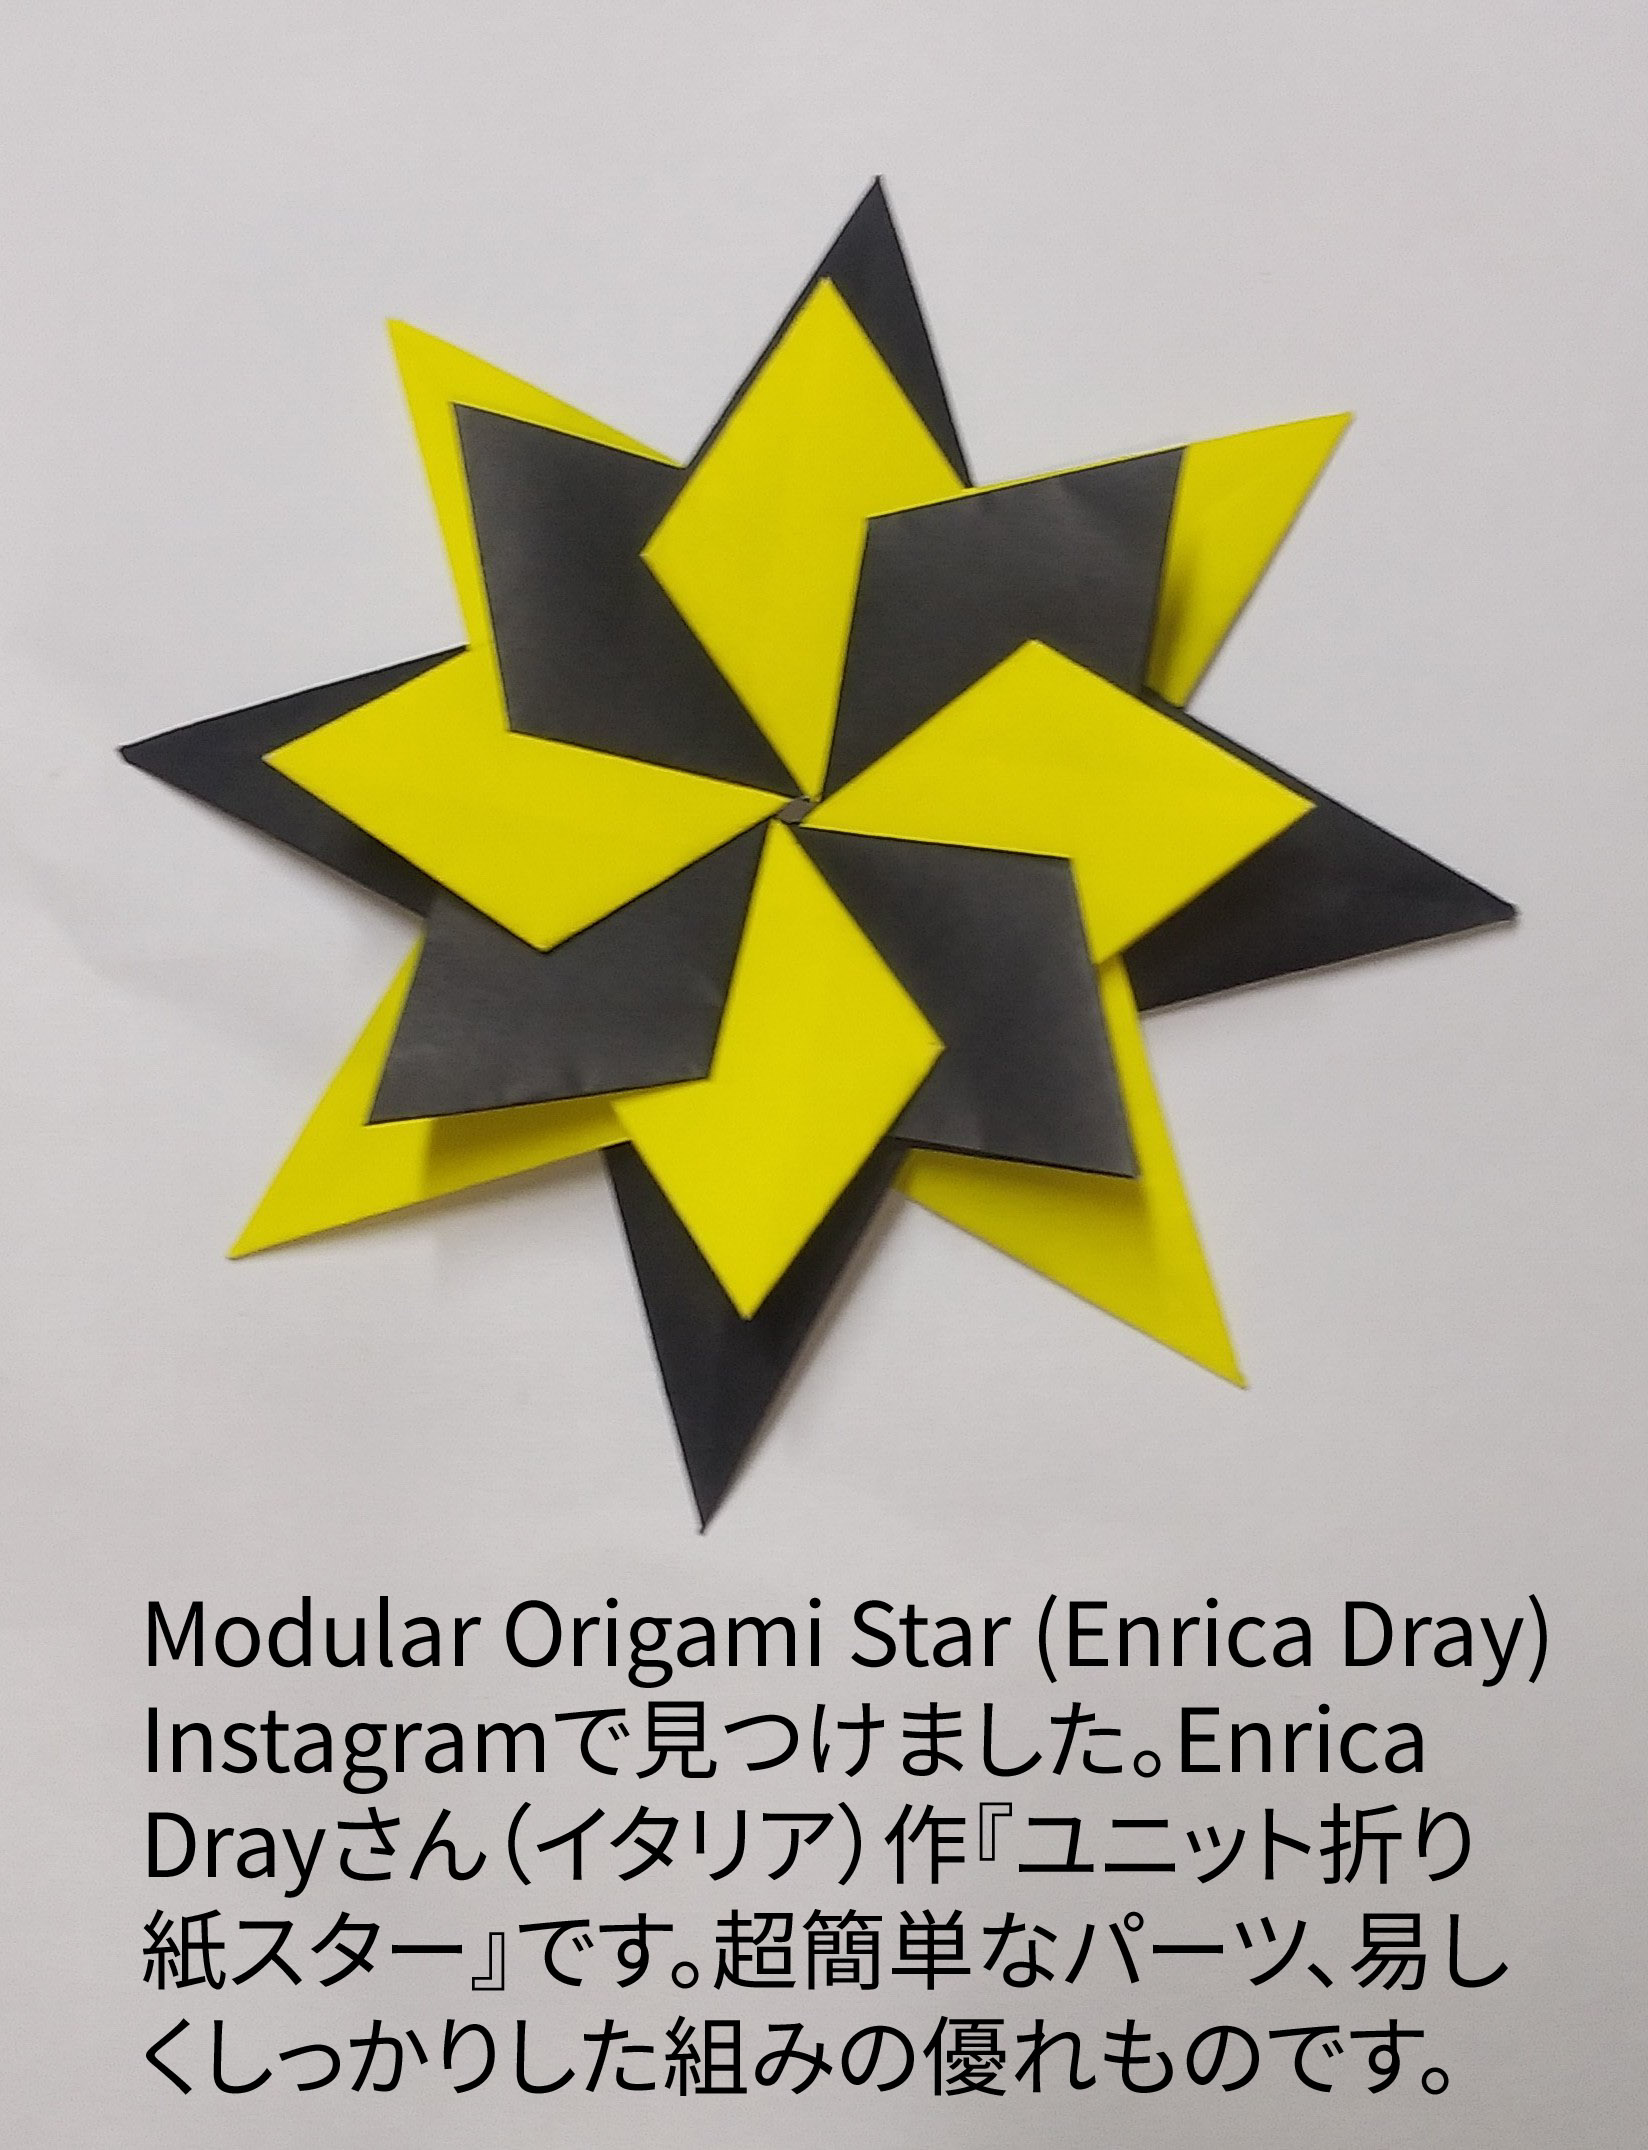 2024/04/20(Sat) 21:58「Modular Origami Star (Enrica Dray) 」川崎敏和 T.Kawasaki
（創作者 Author：Enrica Dray(Italy),　製作者 Folder：川崎敏和 T.Kawasaki ,　出典 Source：Instagramで見つけました。）
 Instagramで見つけました。Enrica Drayさん（イタリア）作『ユニット折り紙スター』です。超簡単なパーツ、易しくしっかりした組みの優れものです。